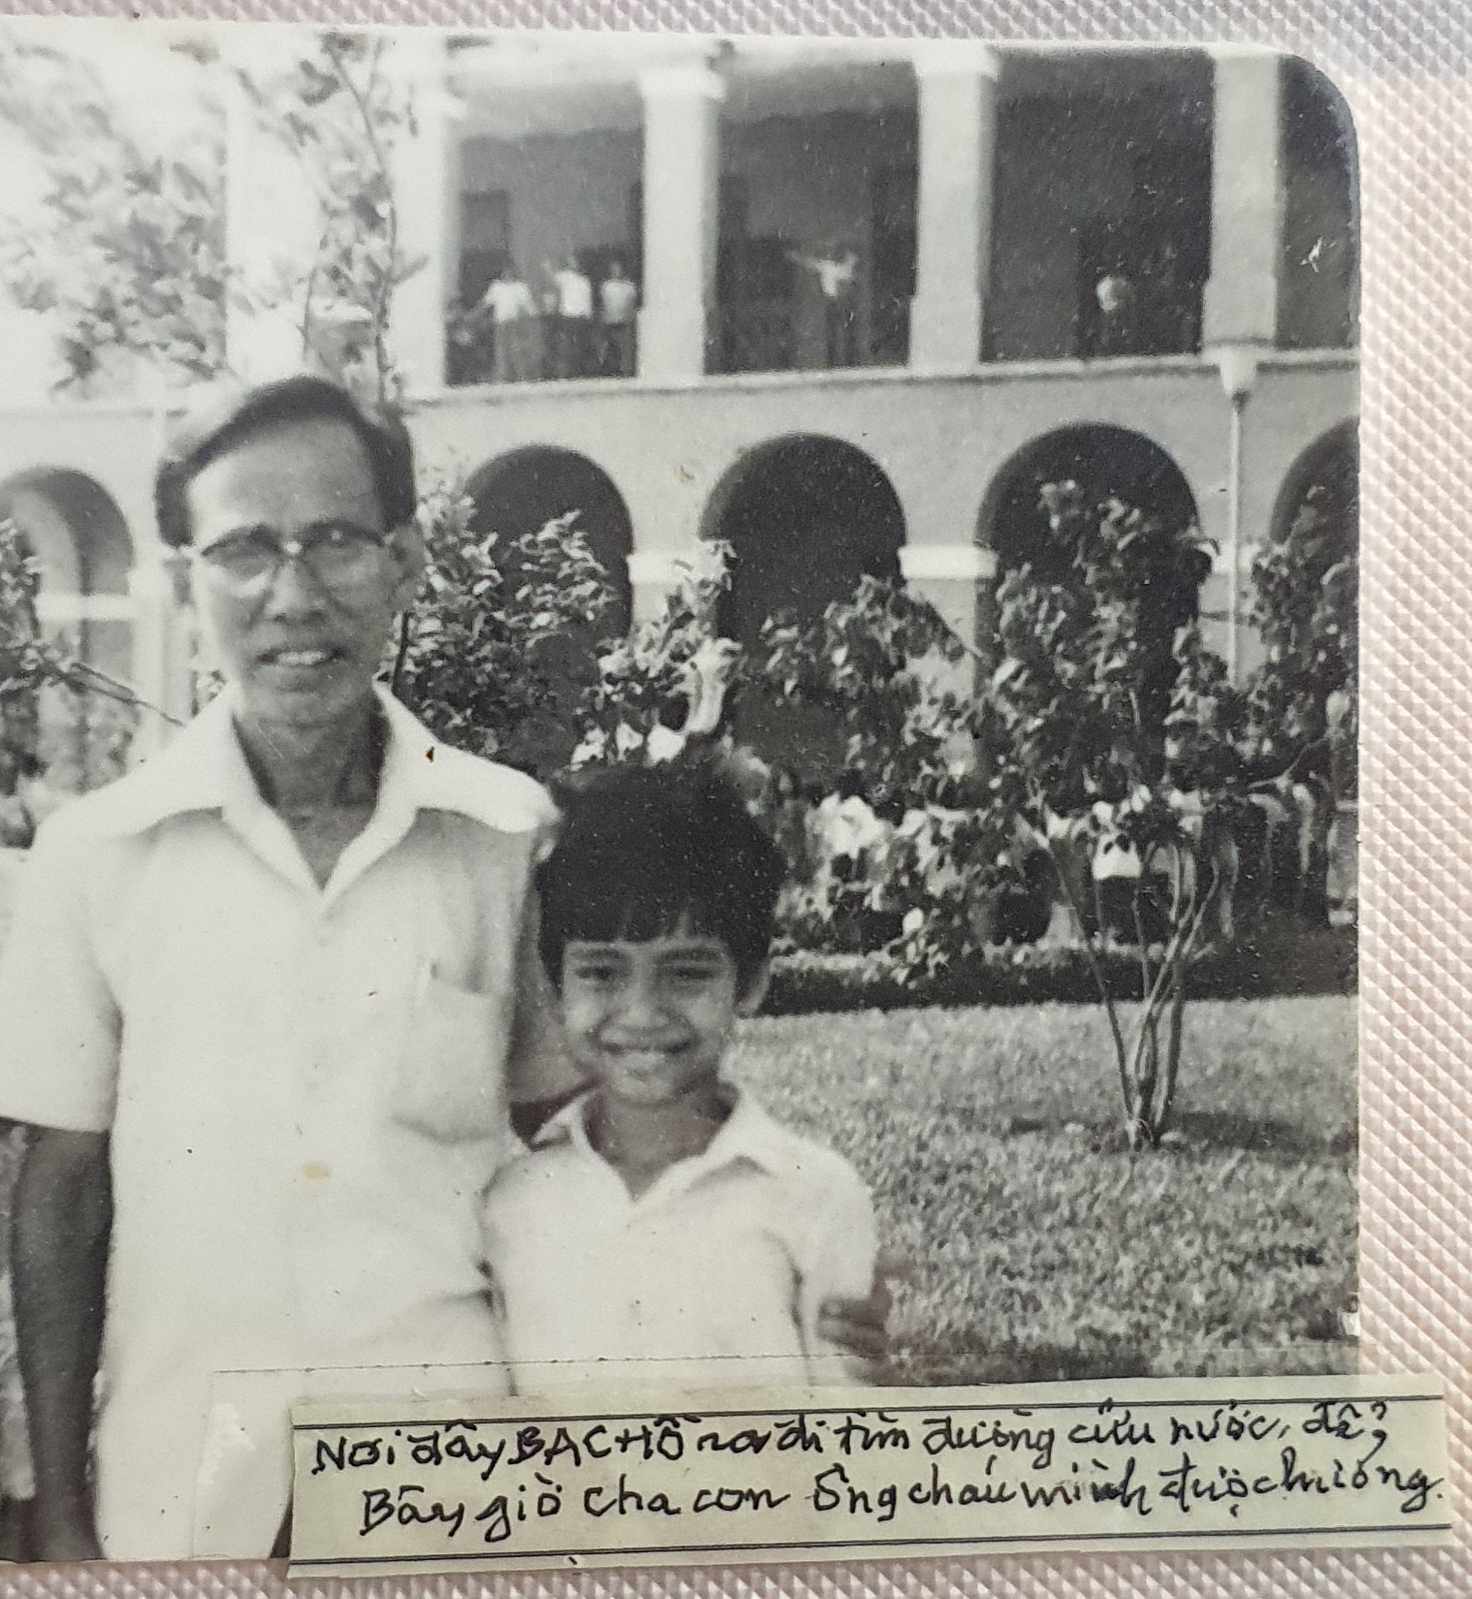 Tấm hình Trần Tuấn Hùng chụp cùng ông nội. Ảnh gia đình cung cấp